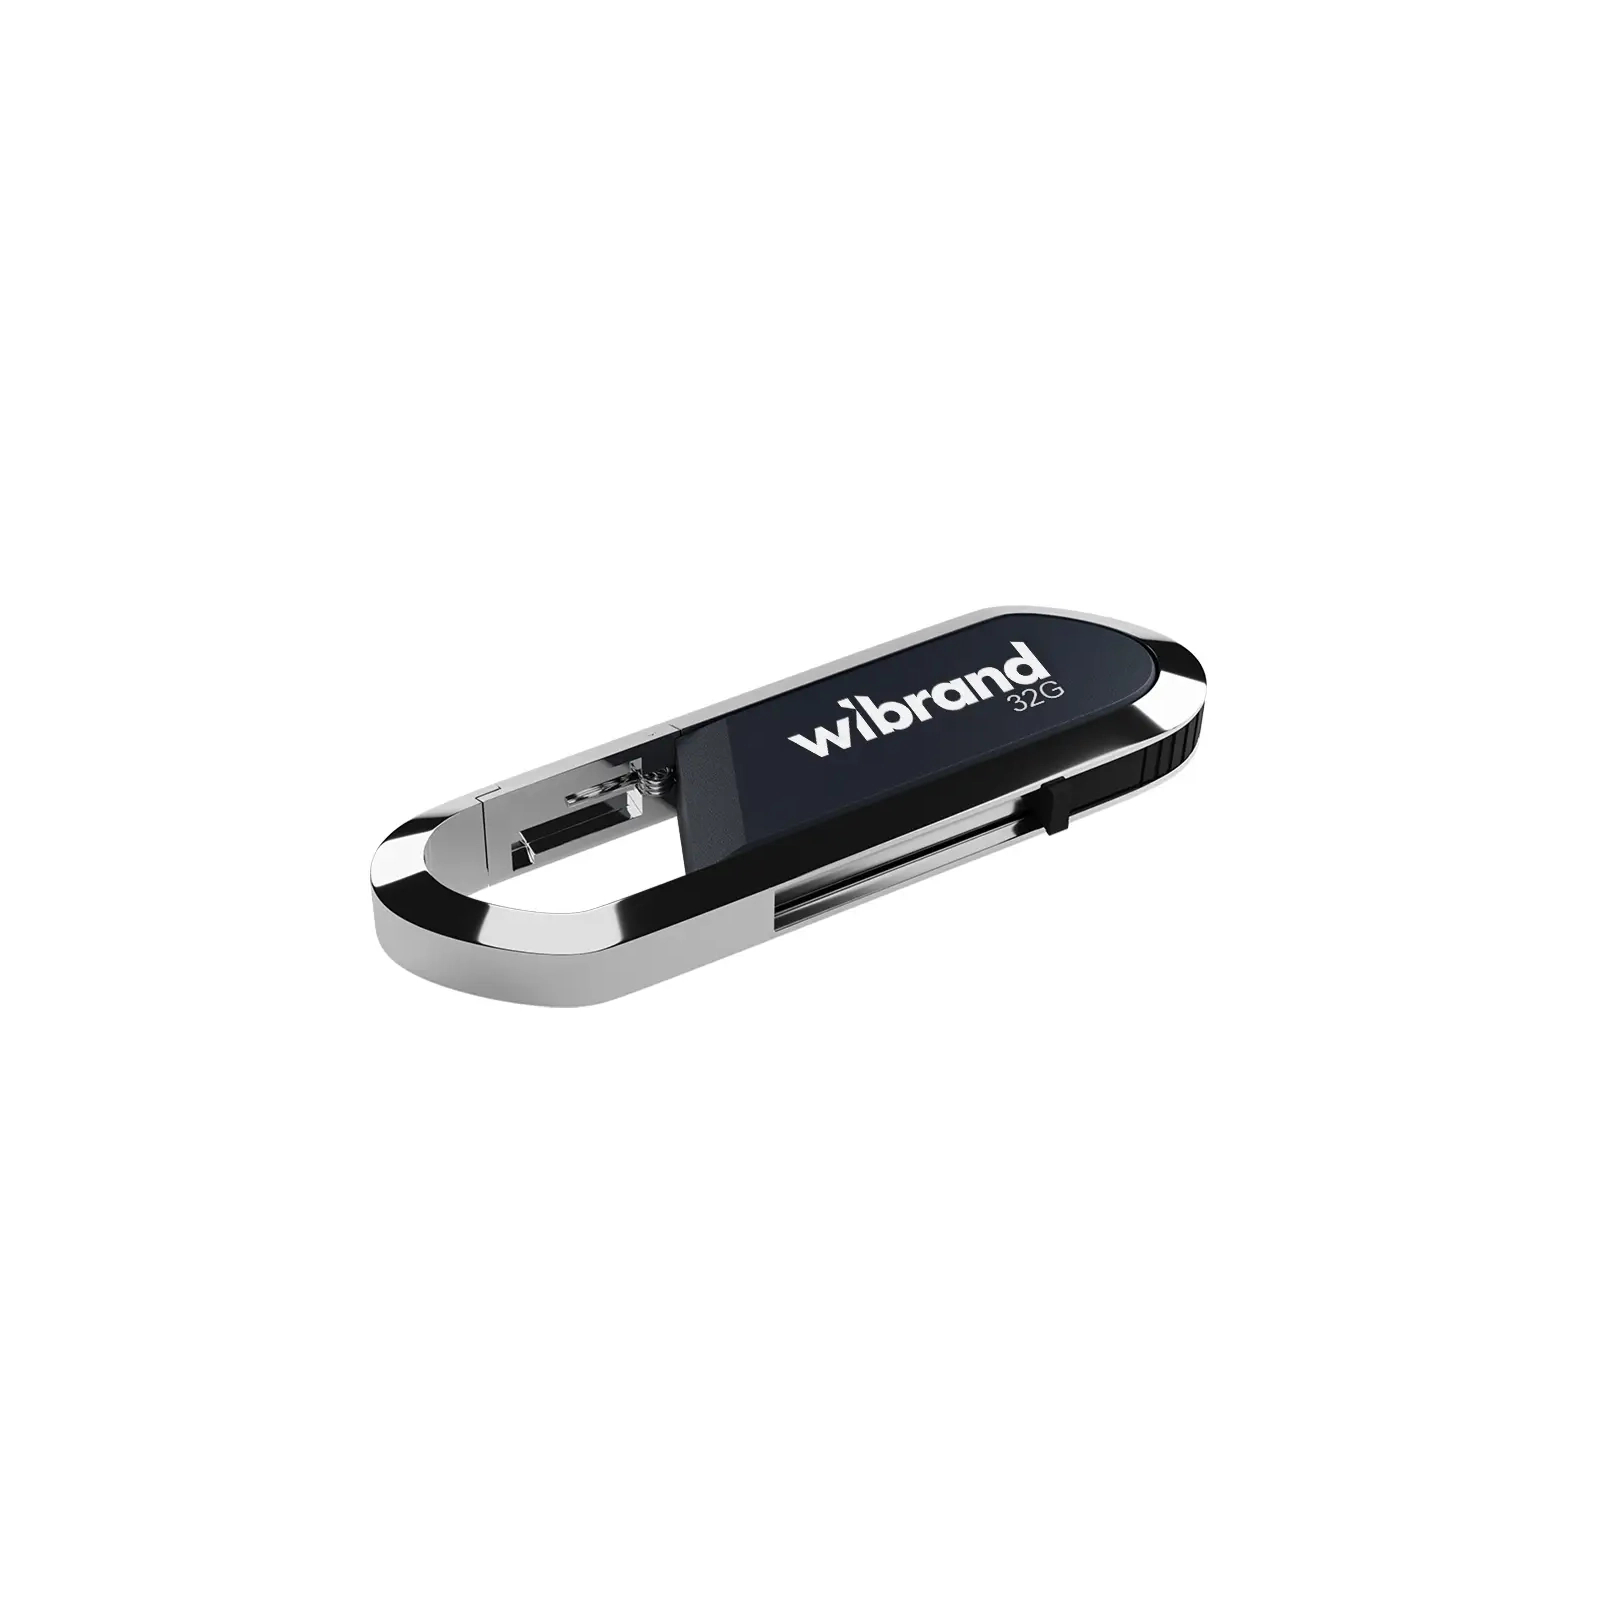 USB флеш накопитель Wibrand 32GB Aligator Red USB 2.0 (WI2.0/AL32U7DR)